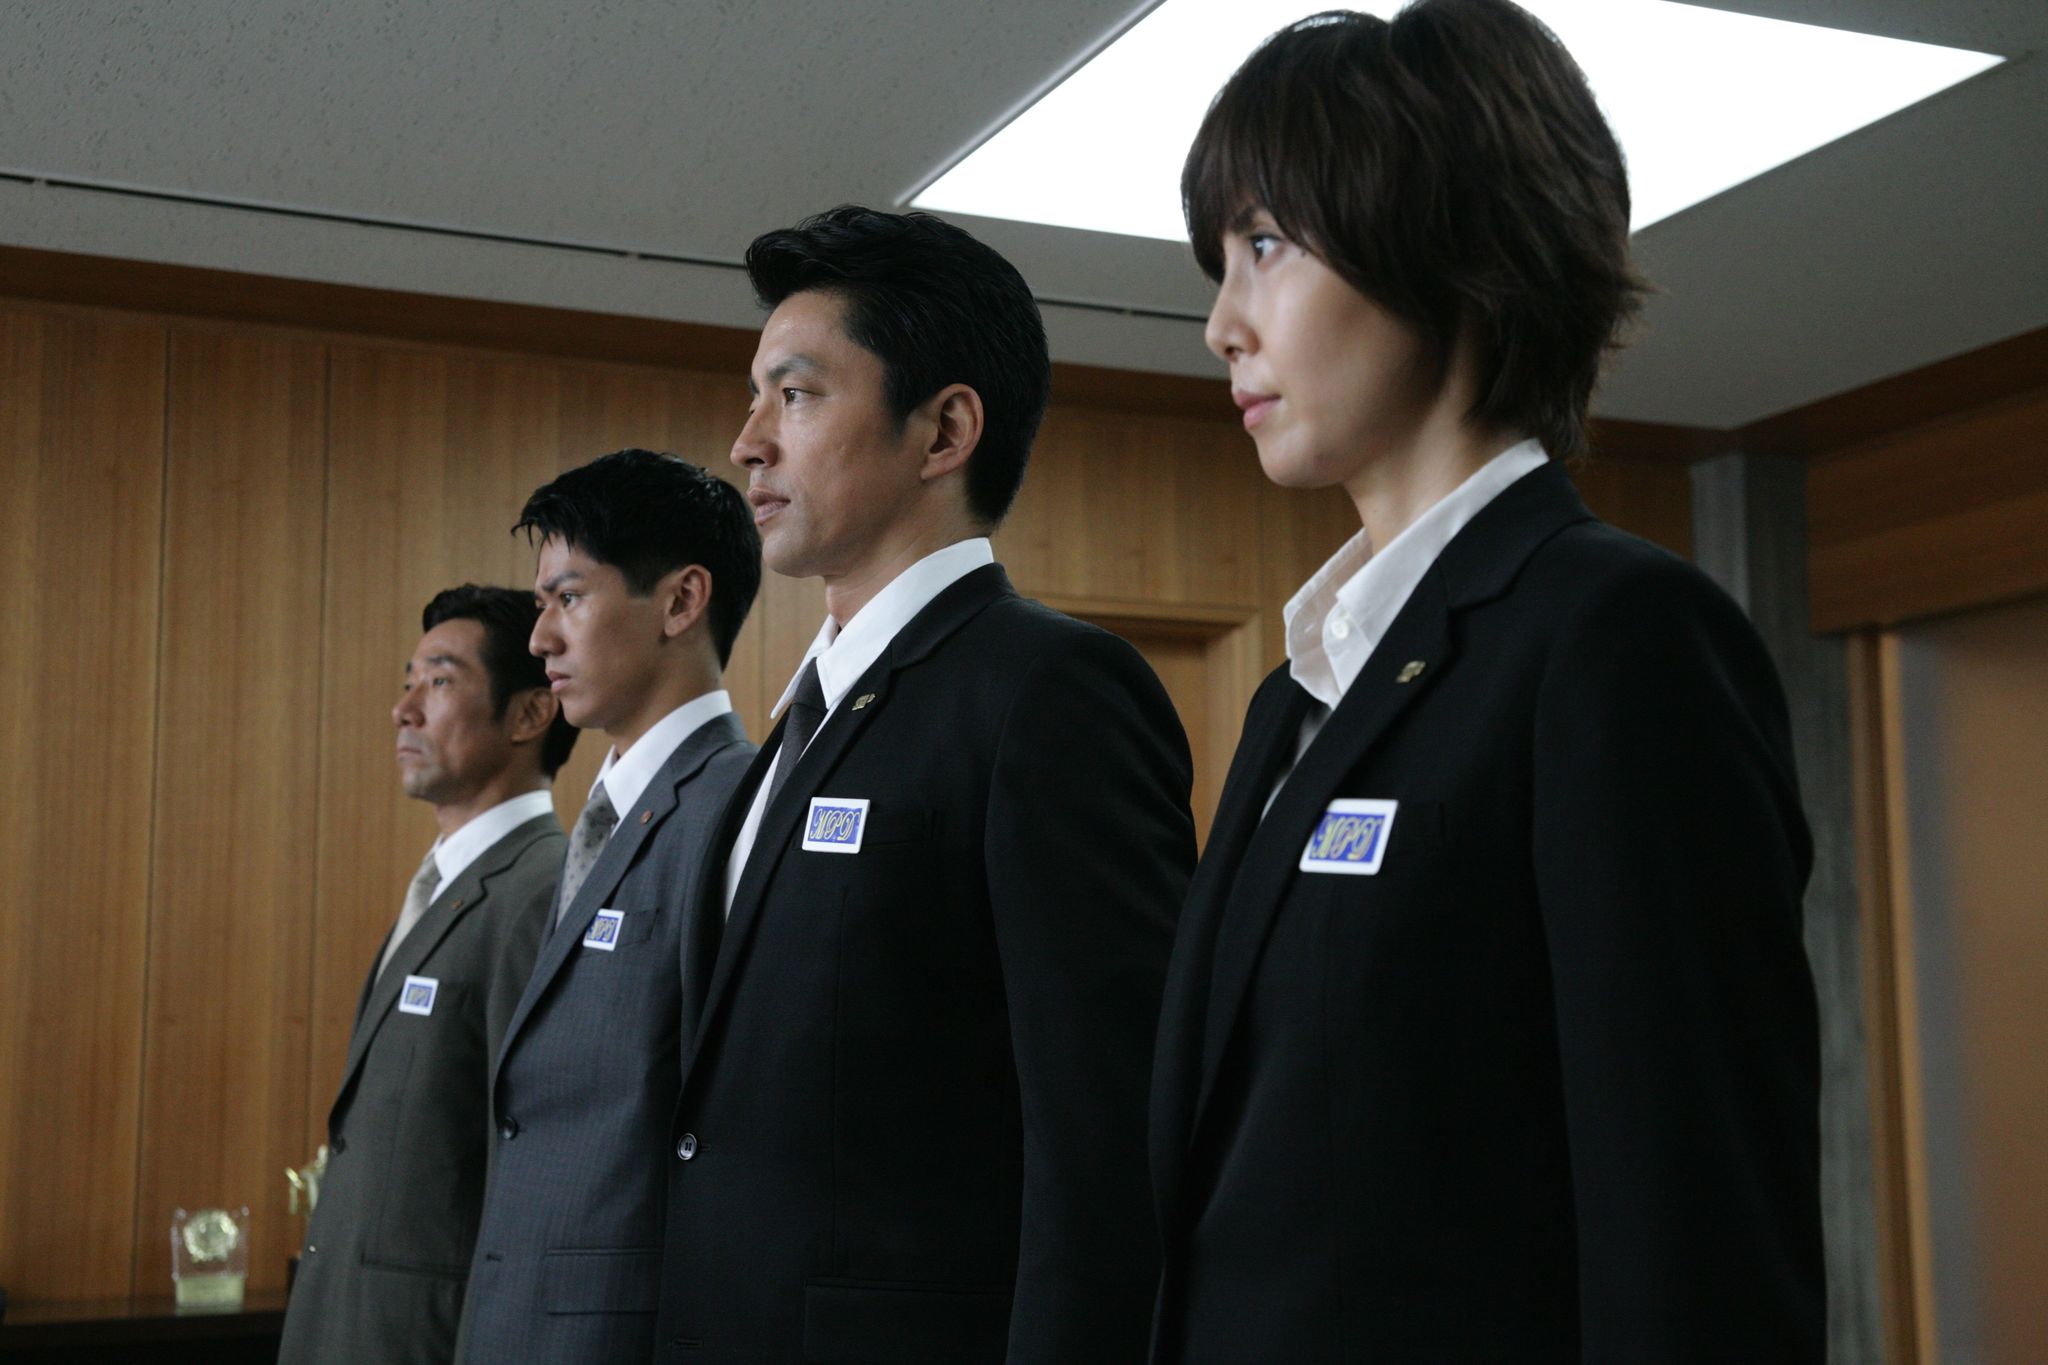 Still of Gorô Kishitani, Nanako Matsushima, Takao Ohsawa and Kento Nagayama in Wara no tate (2013)